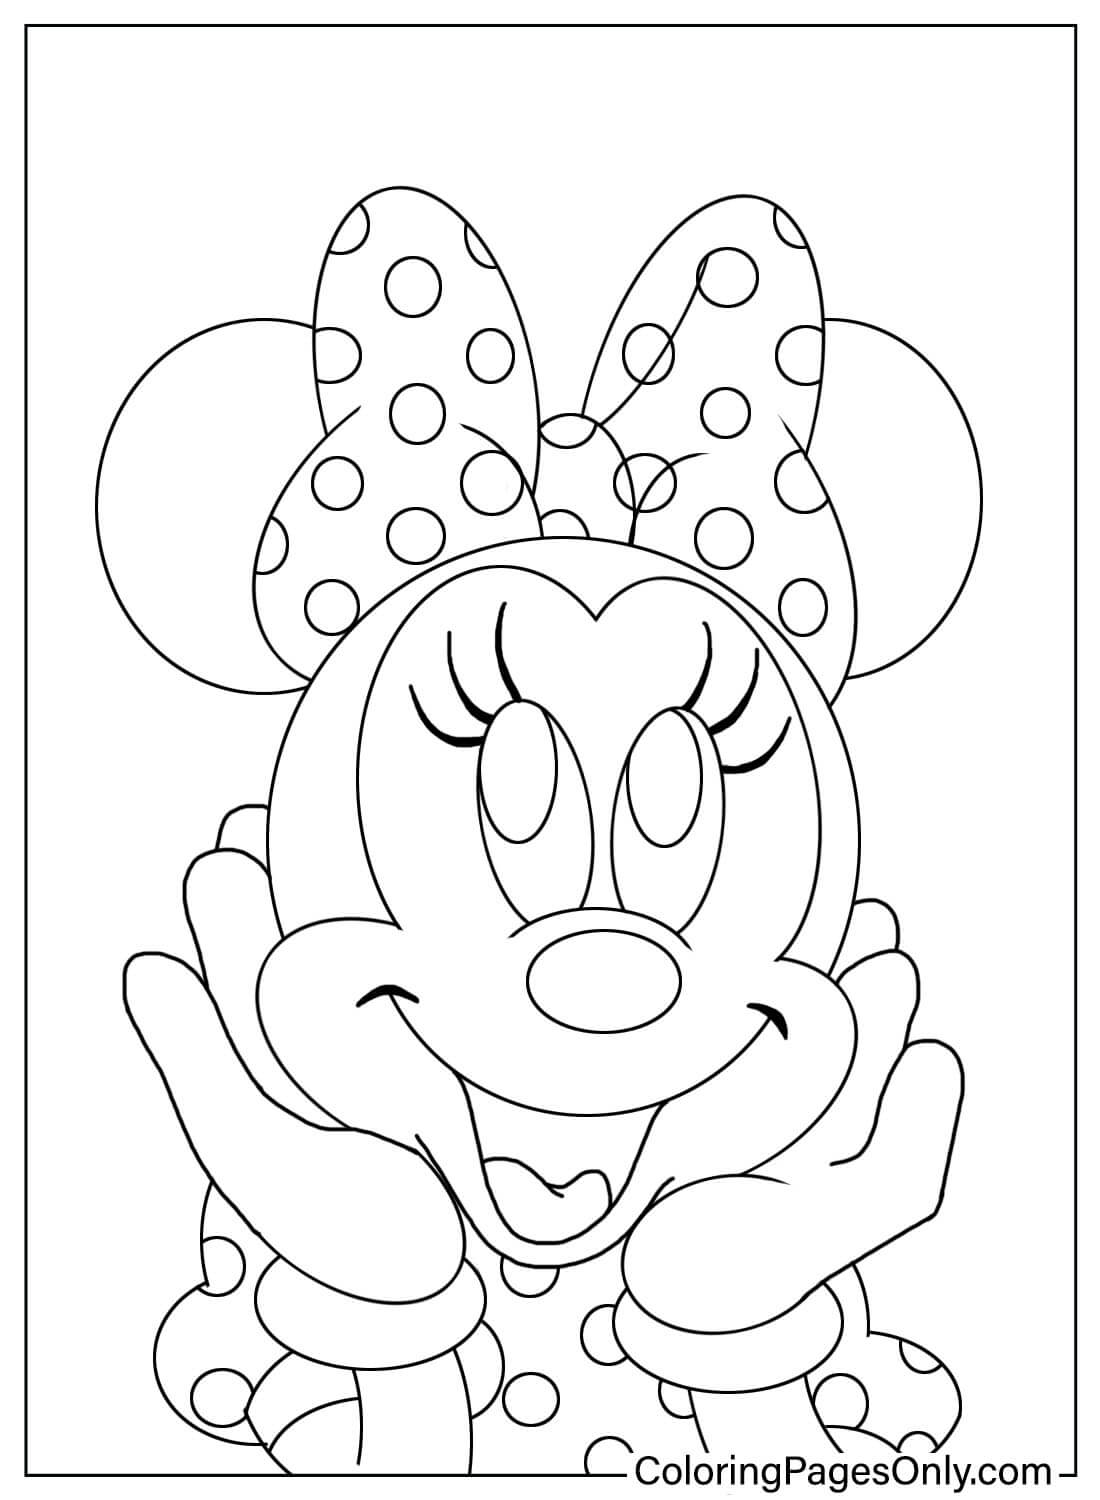 Simpatica pagina da colorare di Minnie Mouse da Minnie Mouse